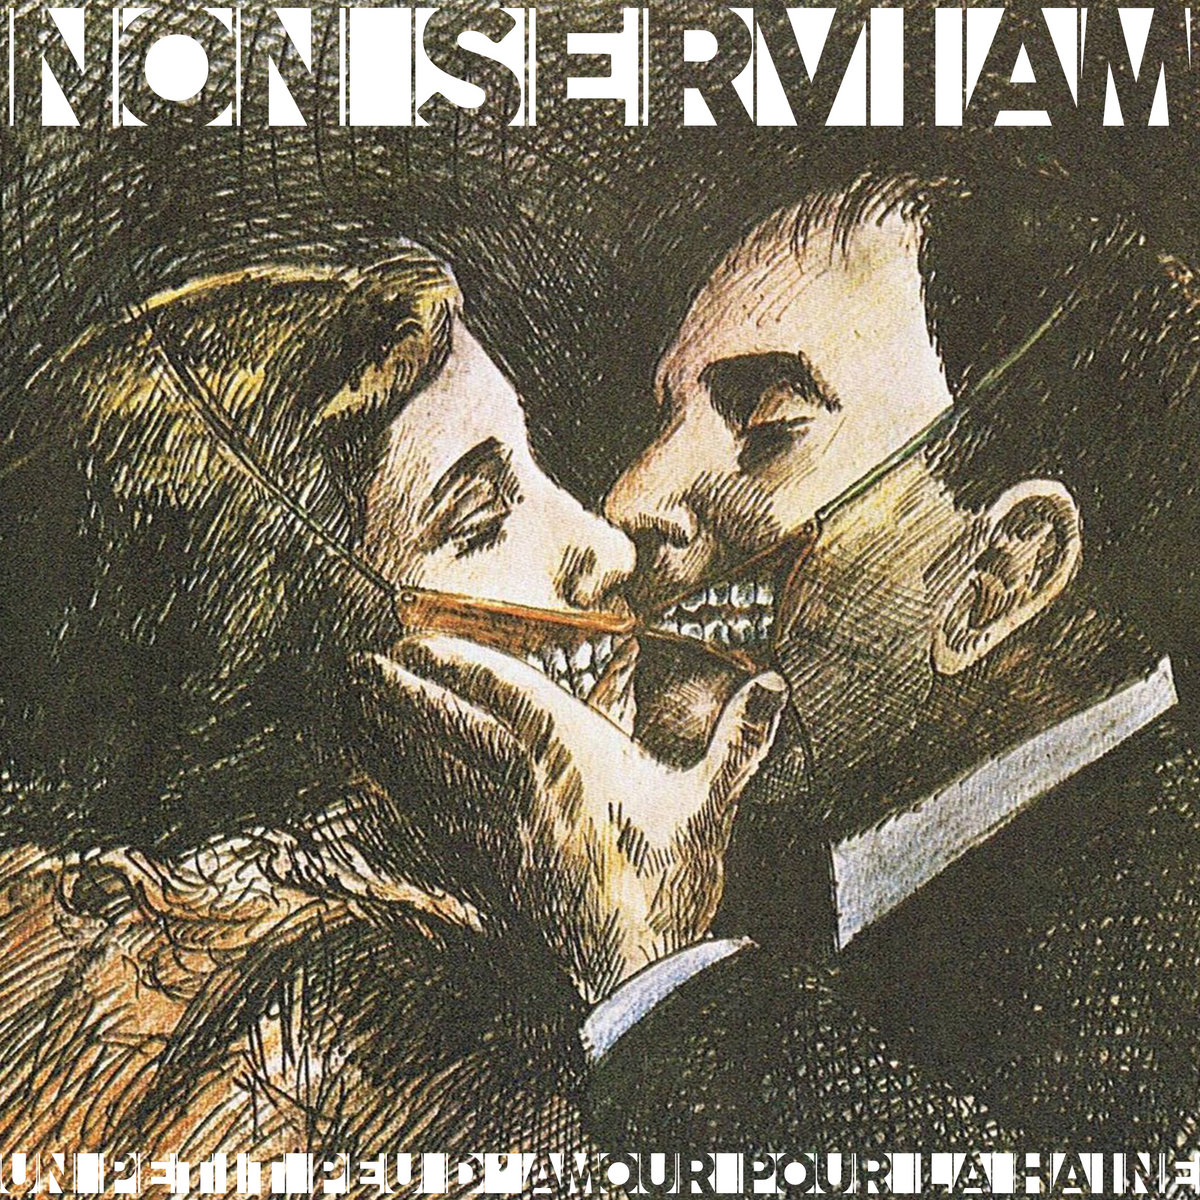 Non Serviam (album) - Wikipedia